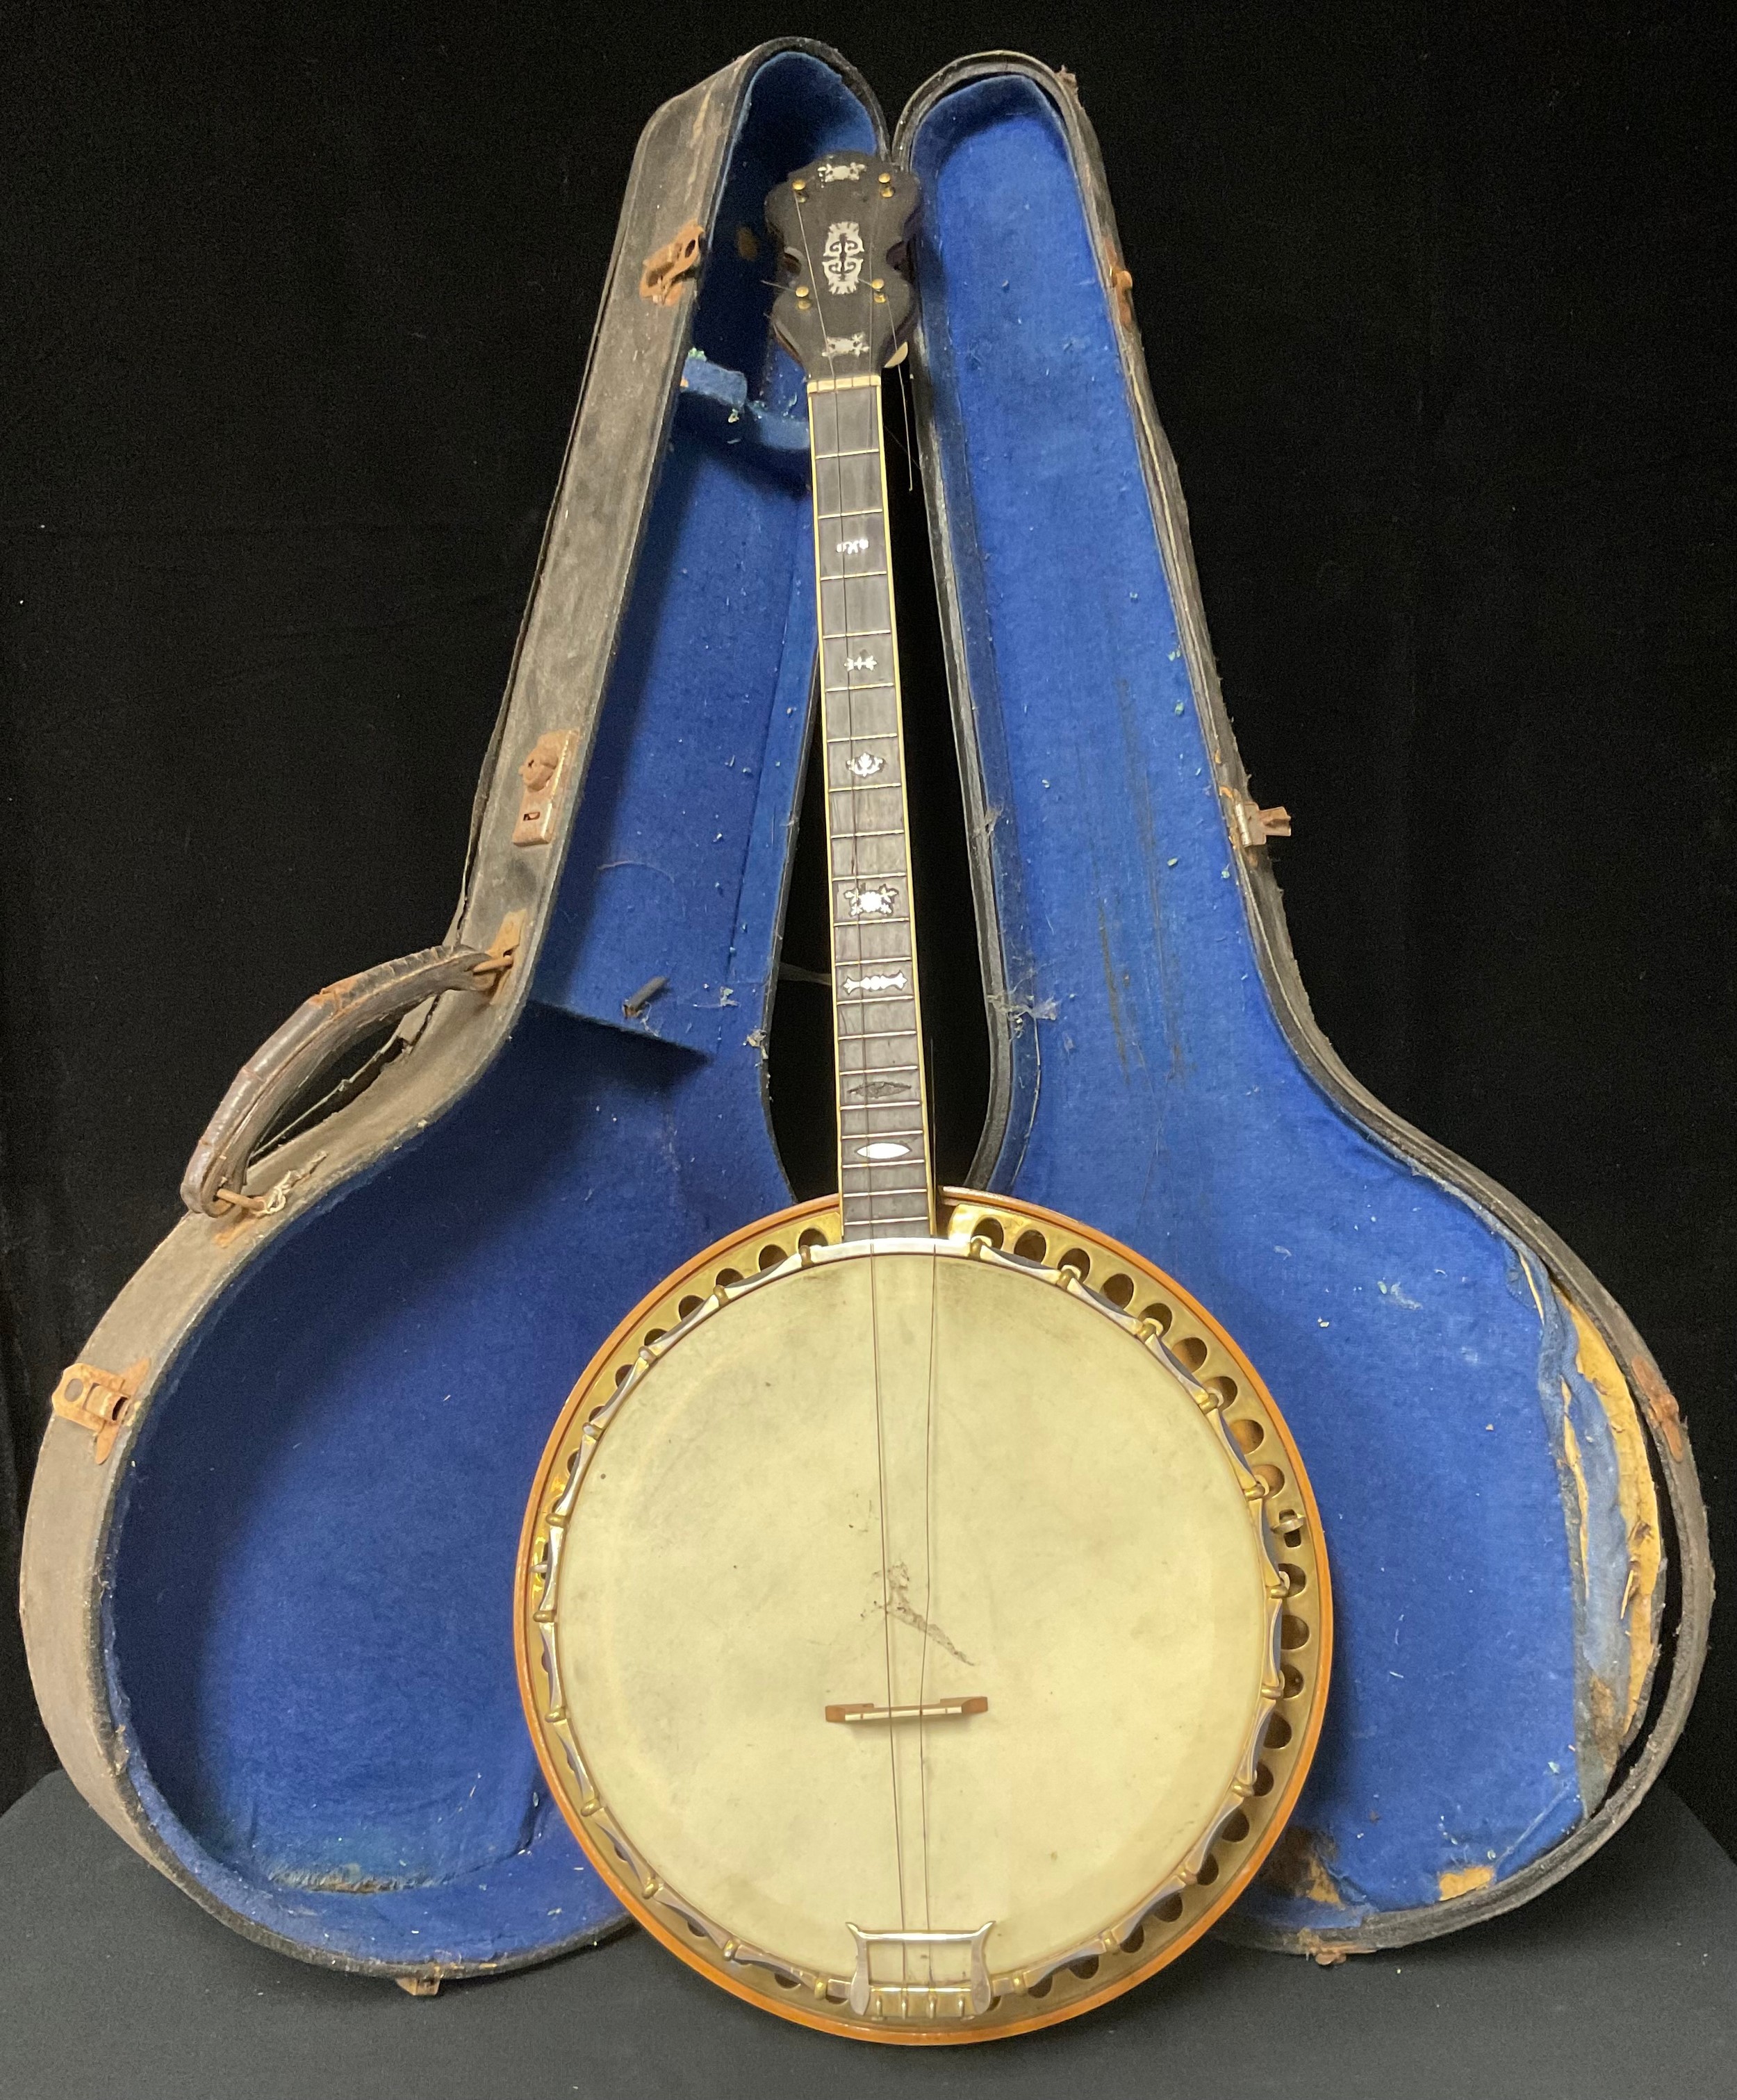 A Barnes & Mullins, London banjo, impressed mark to neck, cased